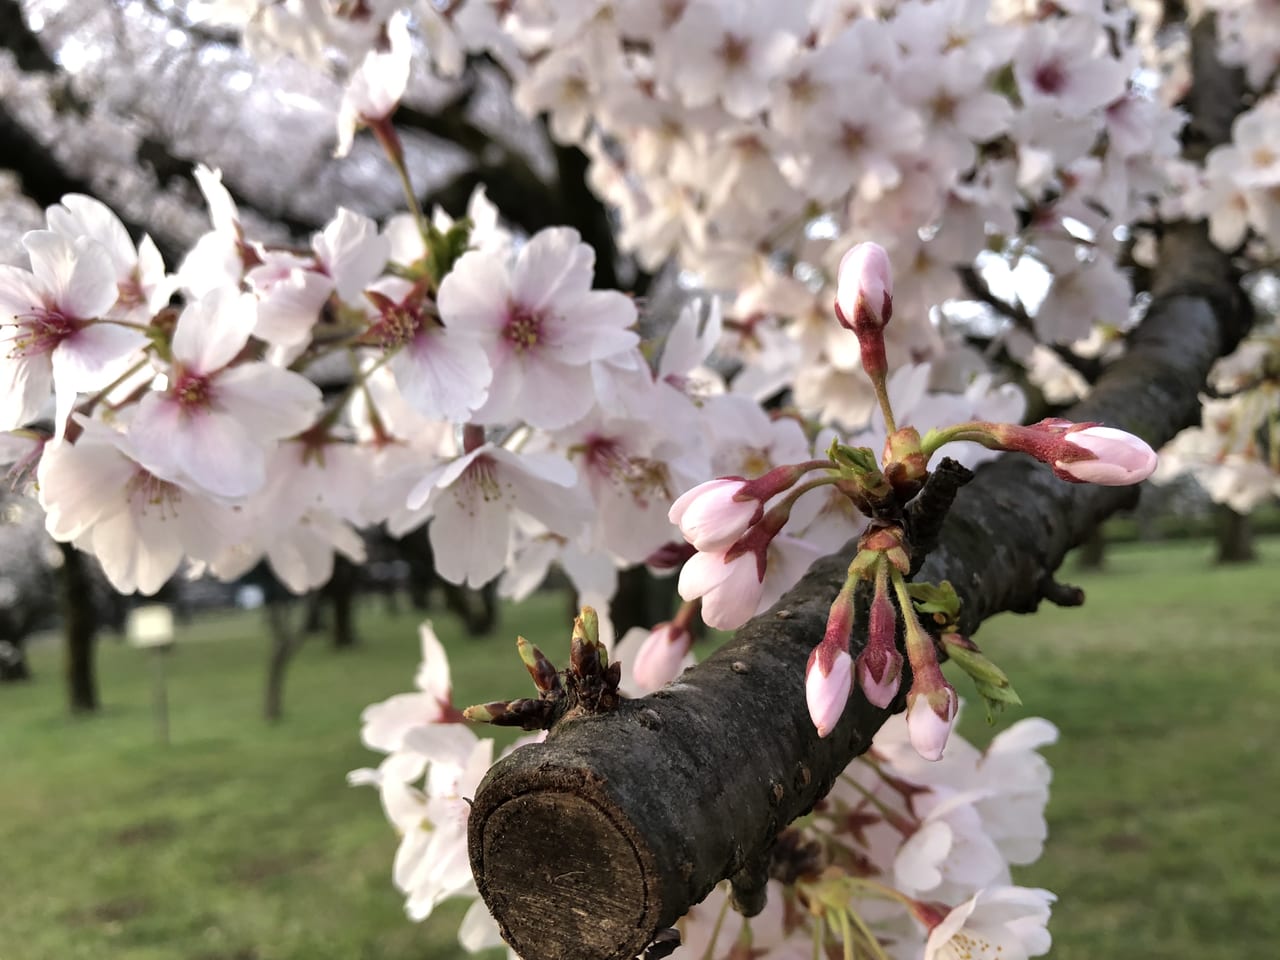 小平市 残念 桜の名所 都立小金井公園 桜まつりが中止になりました 混雑を避けてお花見を バーベキュー広場も現在利用中止です 号外net 小平市